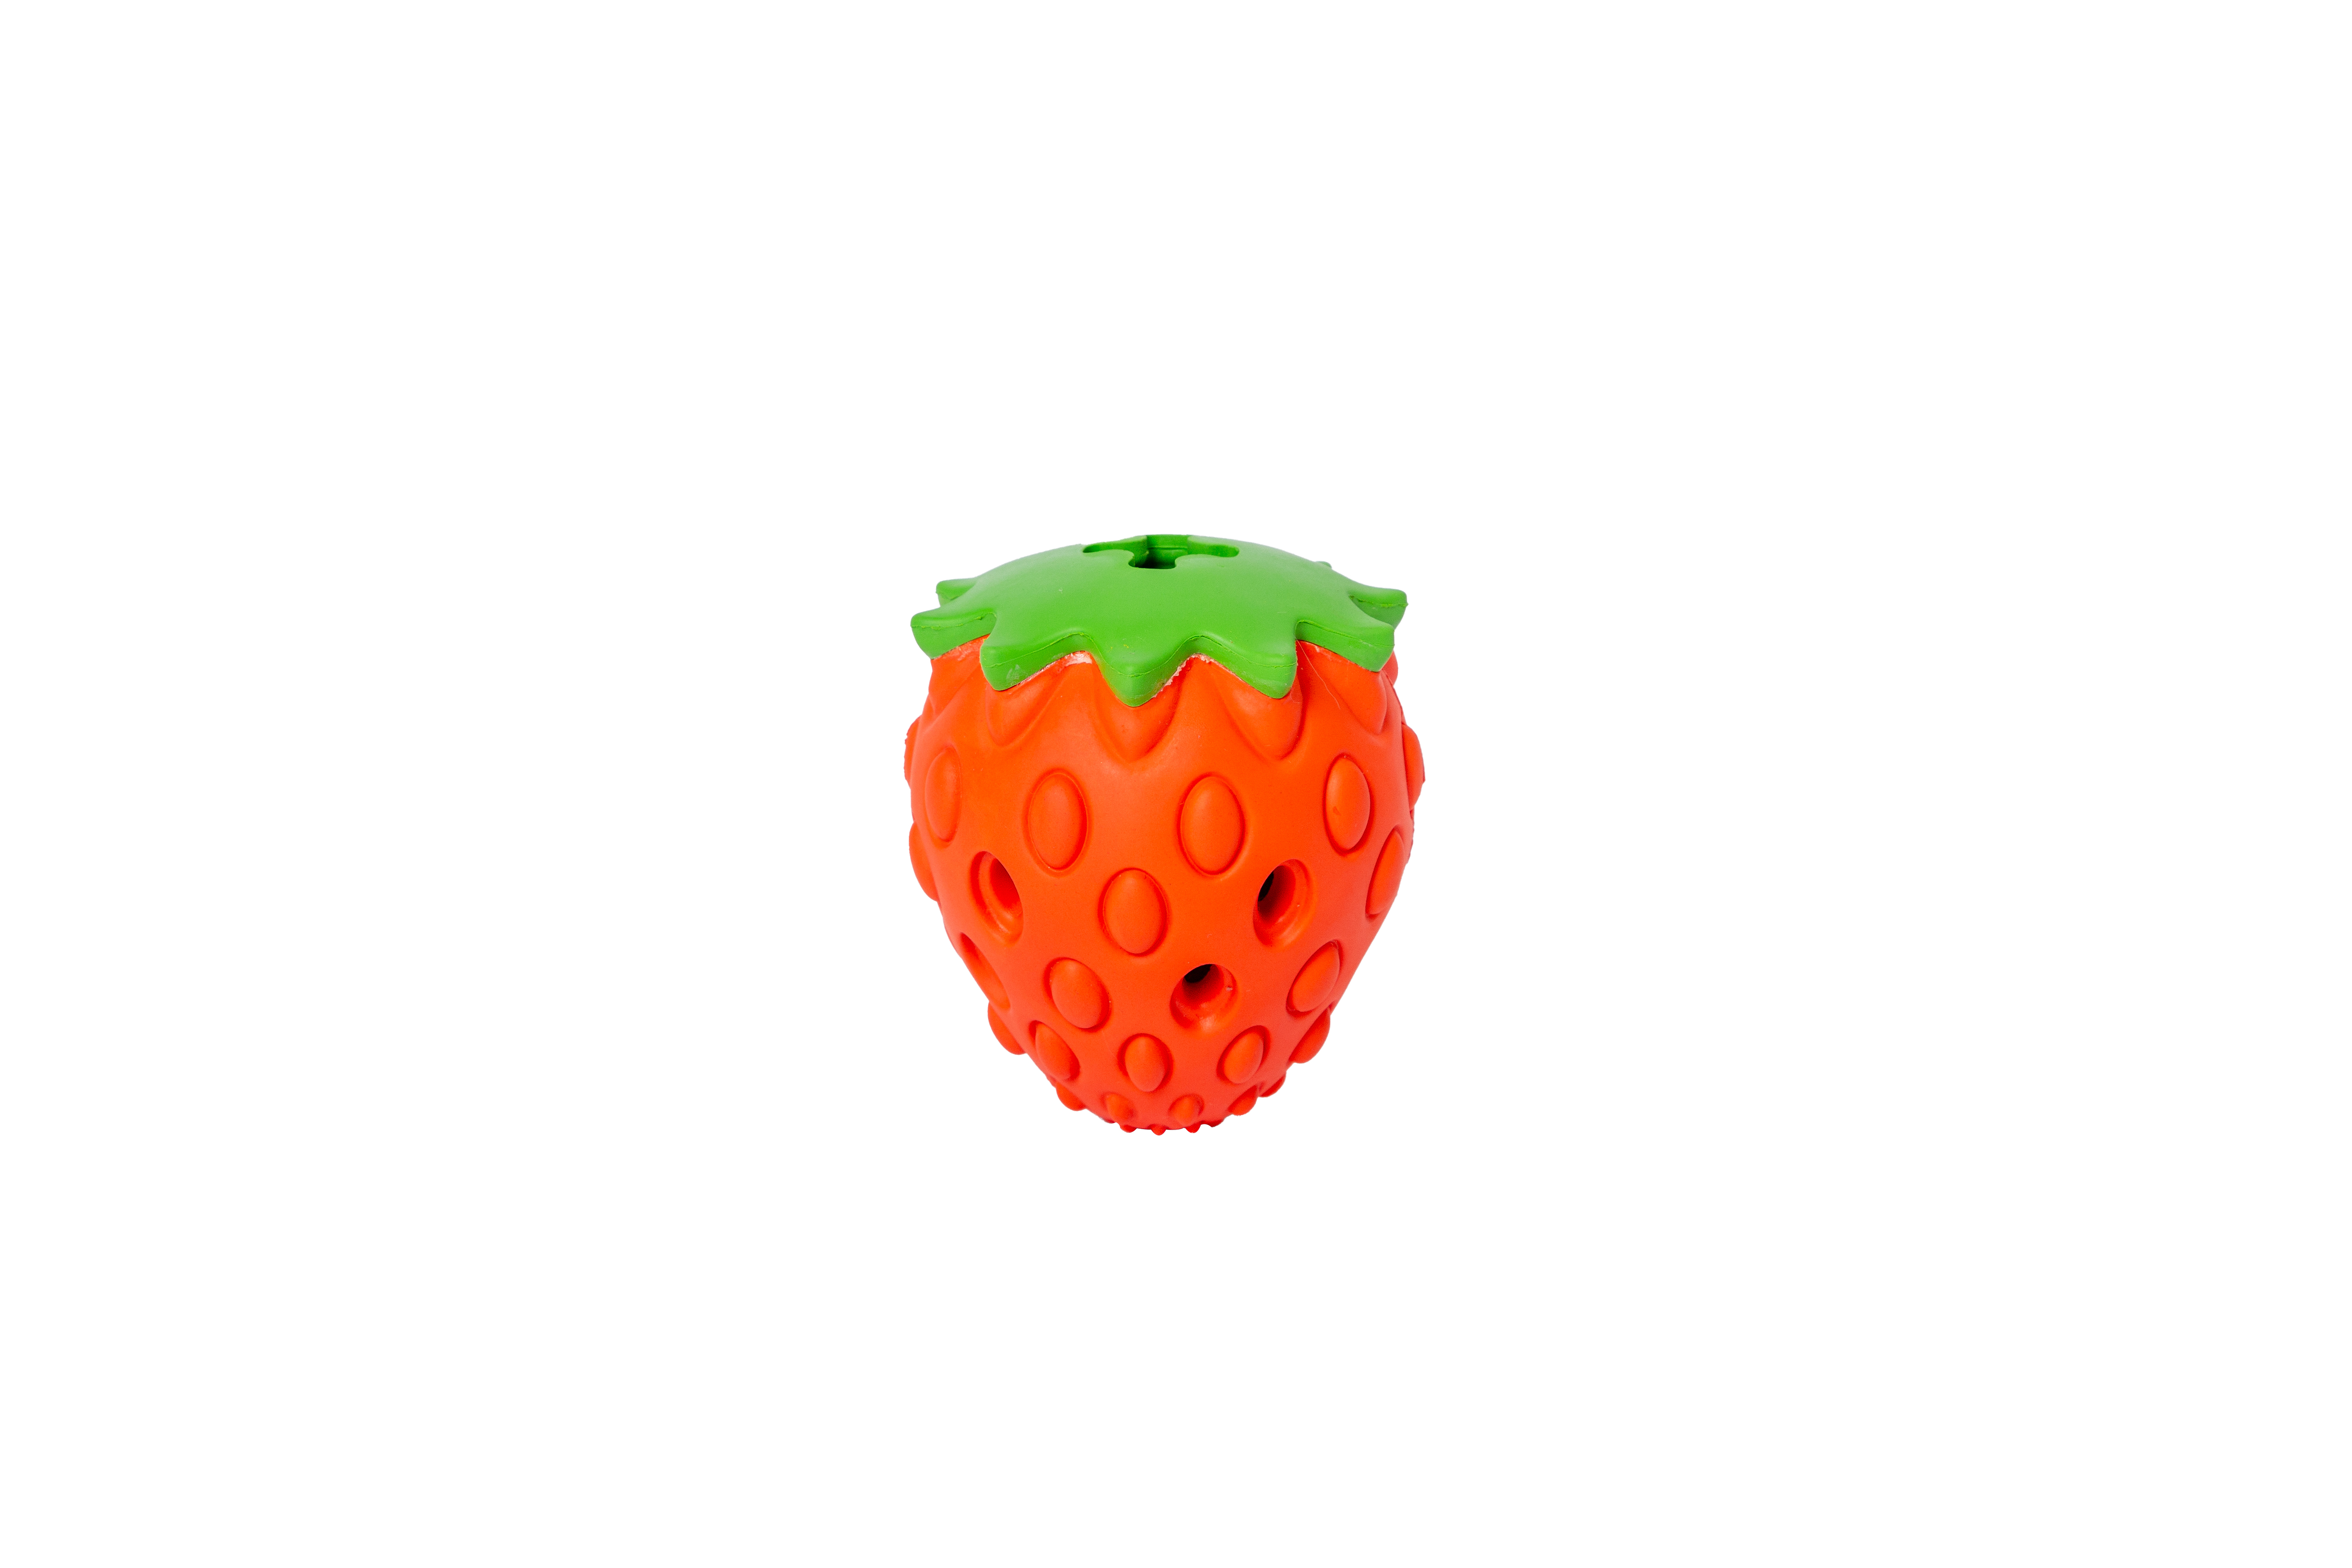 strawberry-snack-toy-8x8x10cm